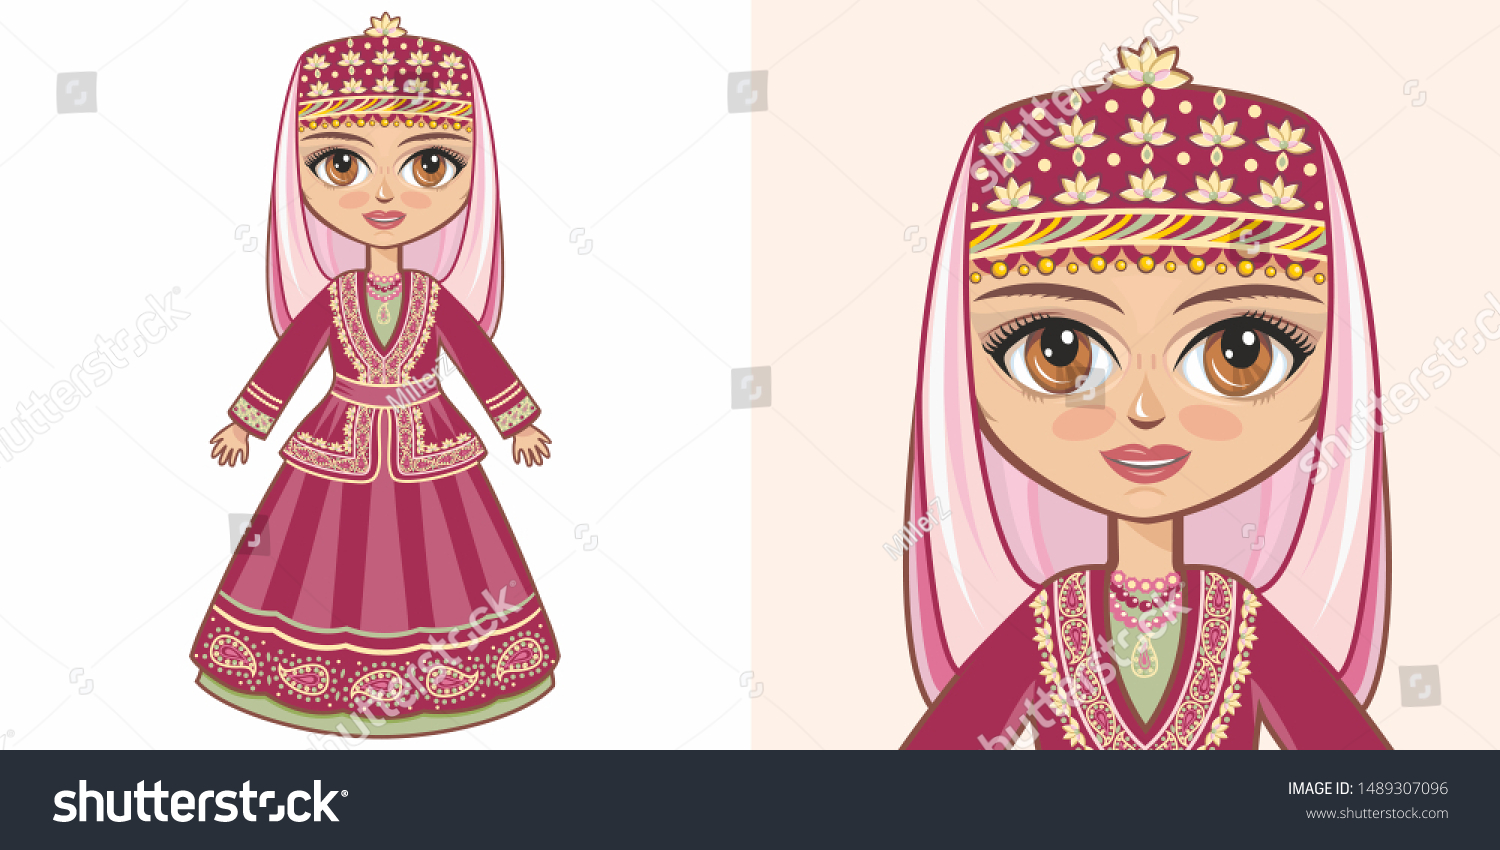 アゼルバイジャンの国の衣装 アゼルバイジャンの民族衣装を着た女の子 アゼルバイジャン シーア派 国民服のイスラム教アゼリ人の民族衣装アゼルバイジャン バクー アゼルバイジャンの国民服 のベクター画像素材 ロイヤリティフリー